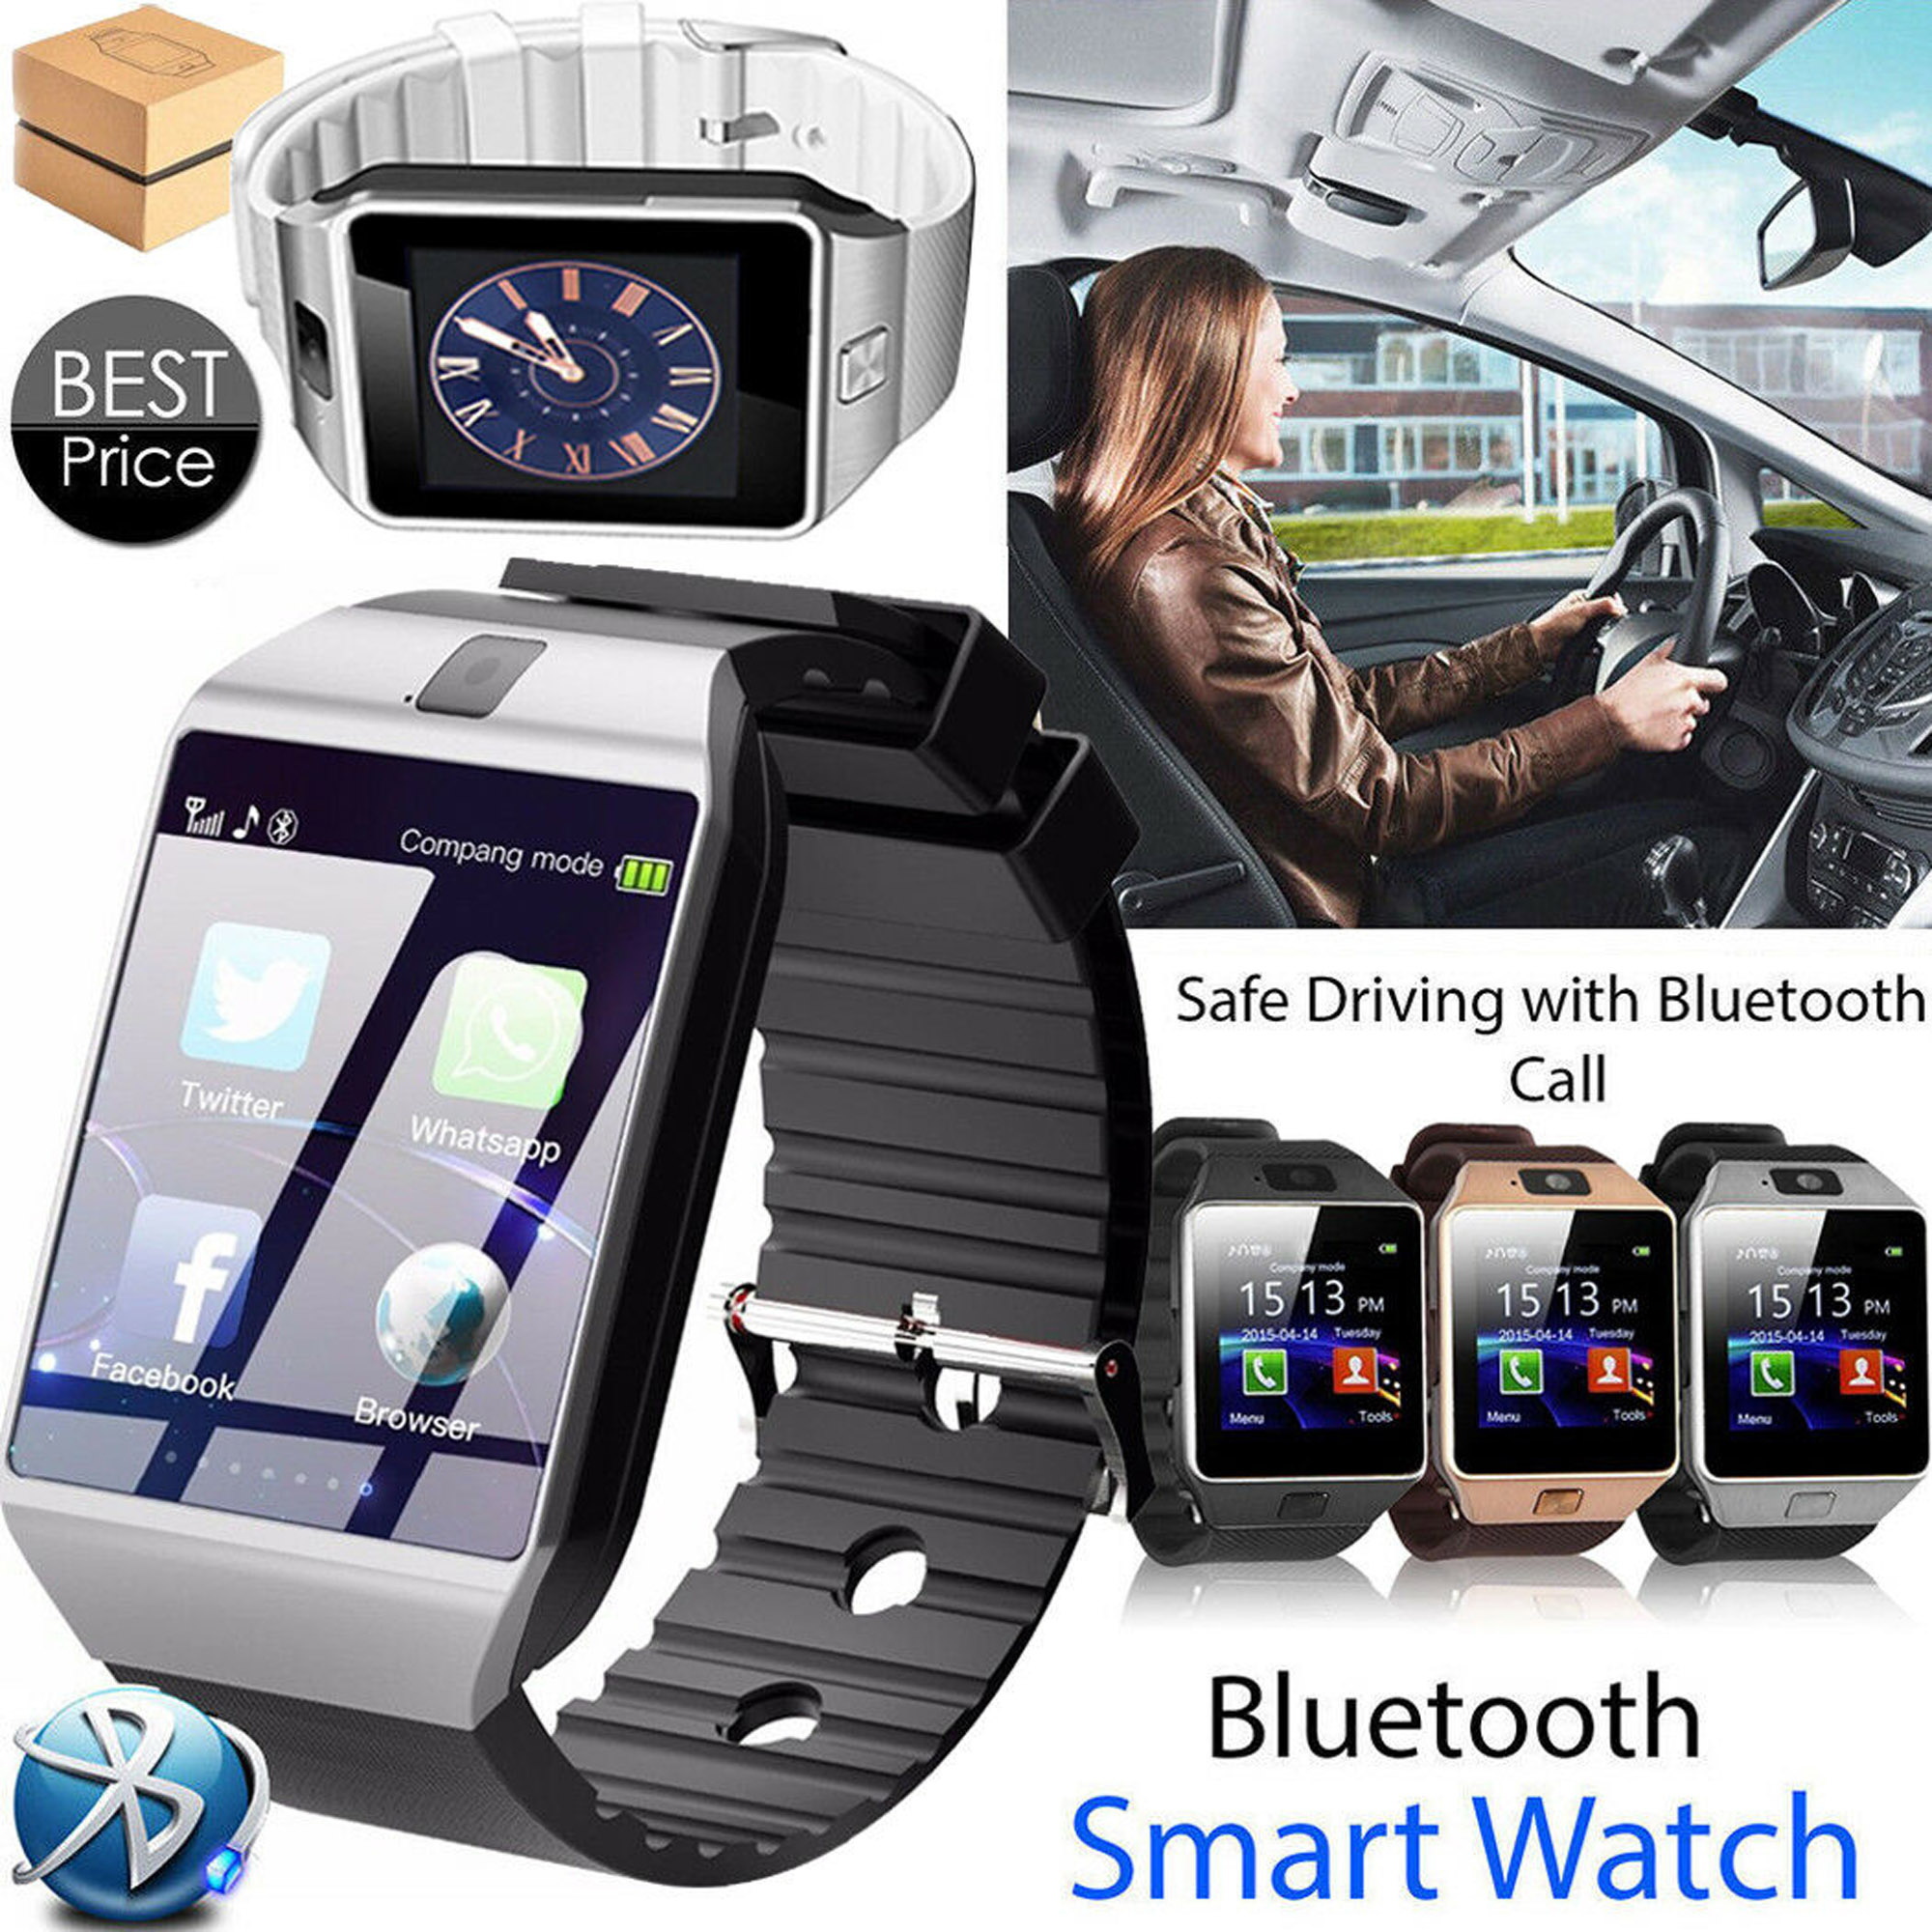 studcart bluetooth smart watch